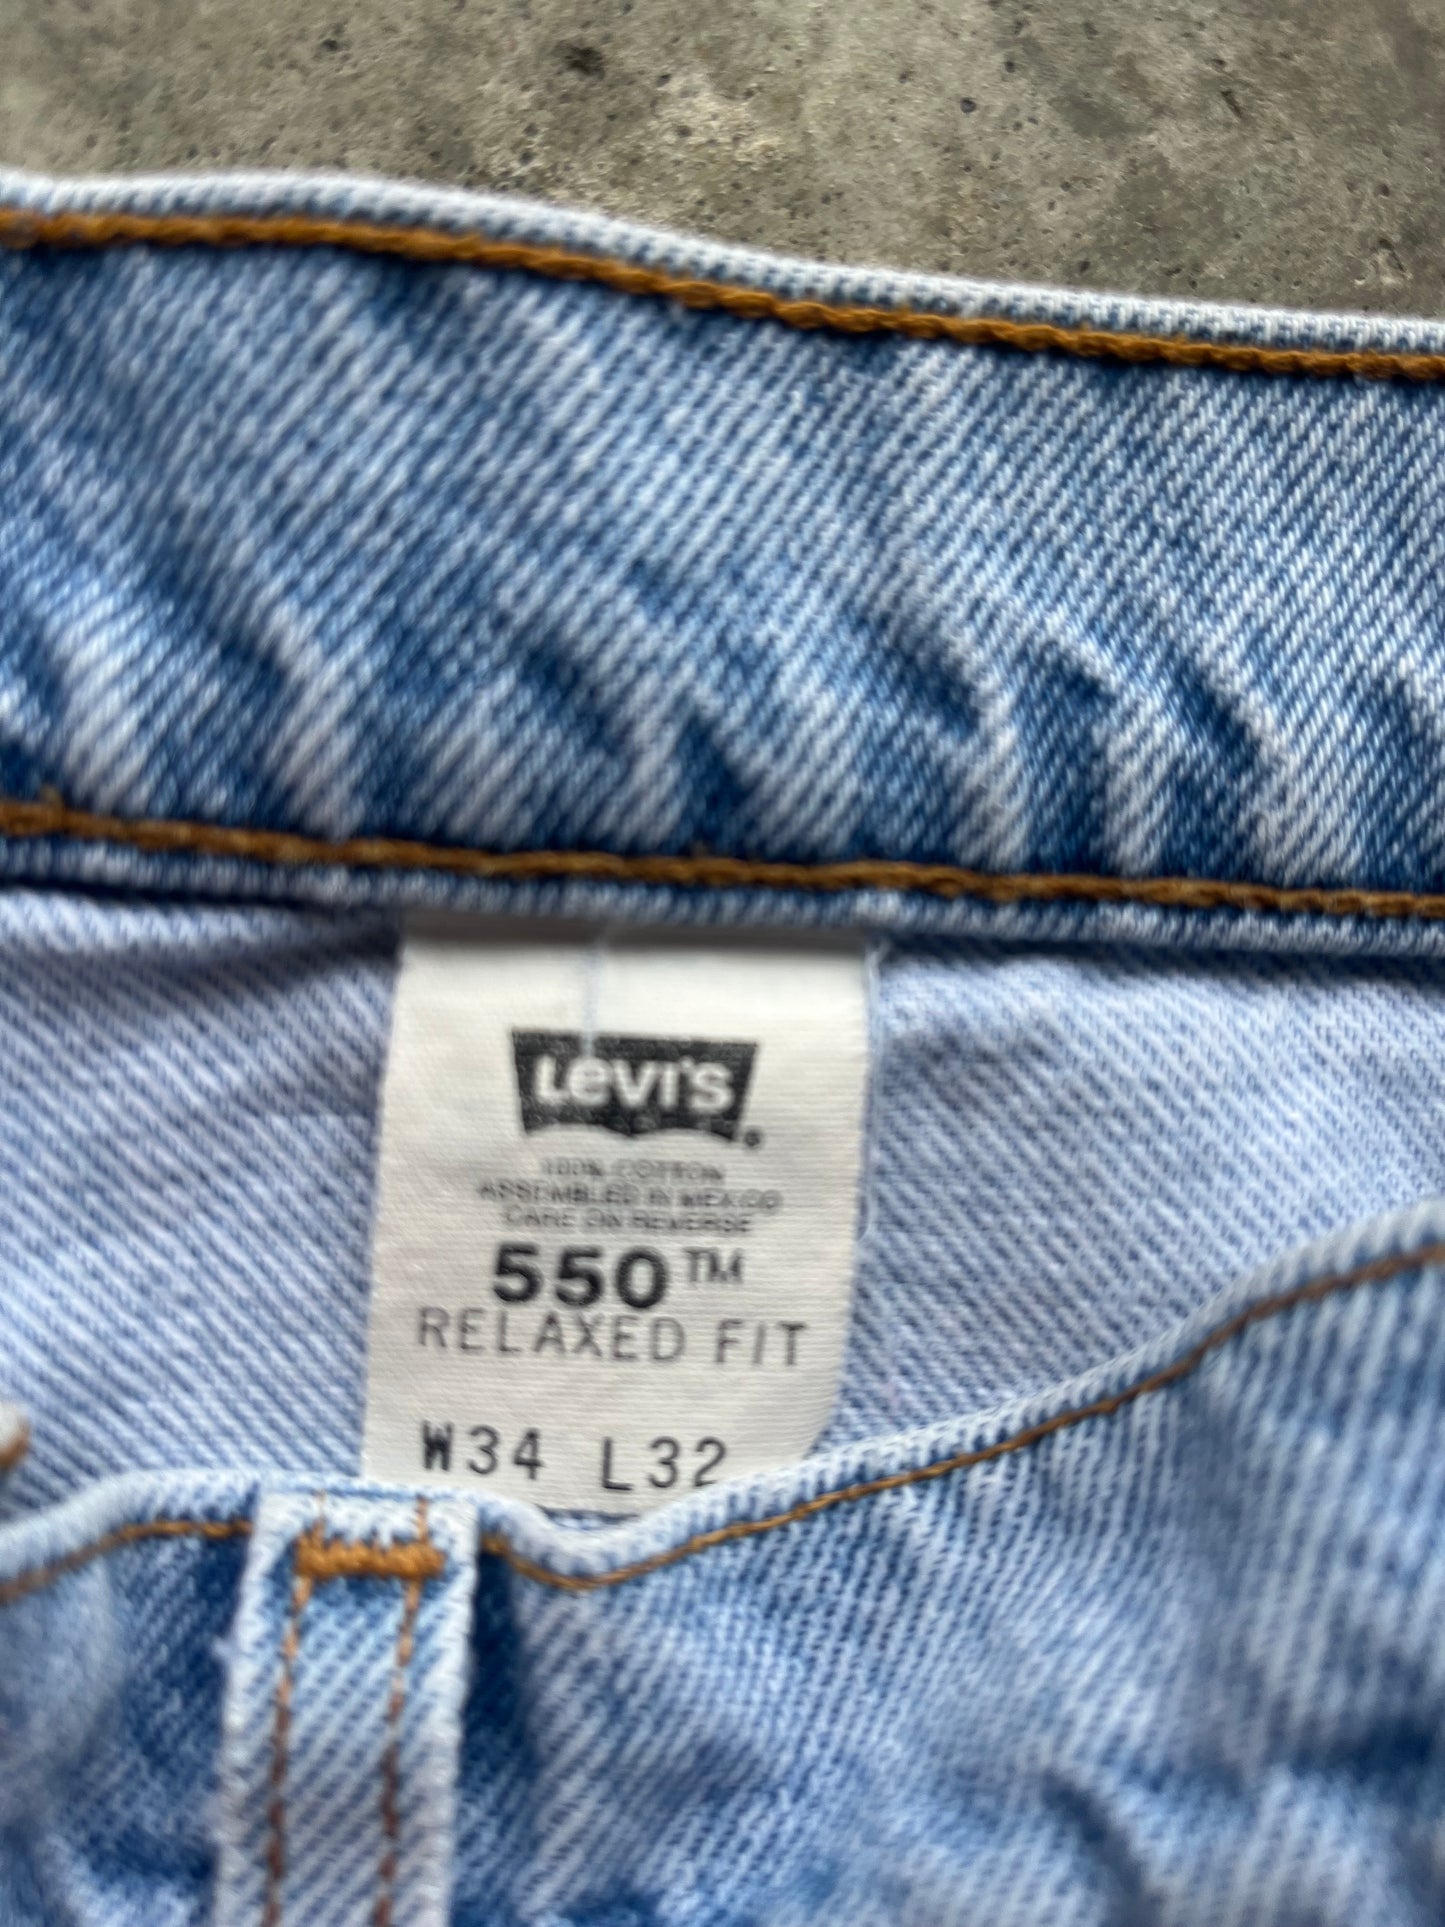 (34 x 32) Vintage Levi Orange Tab Jeans